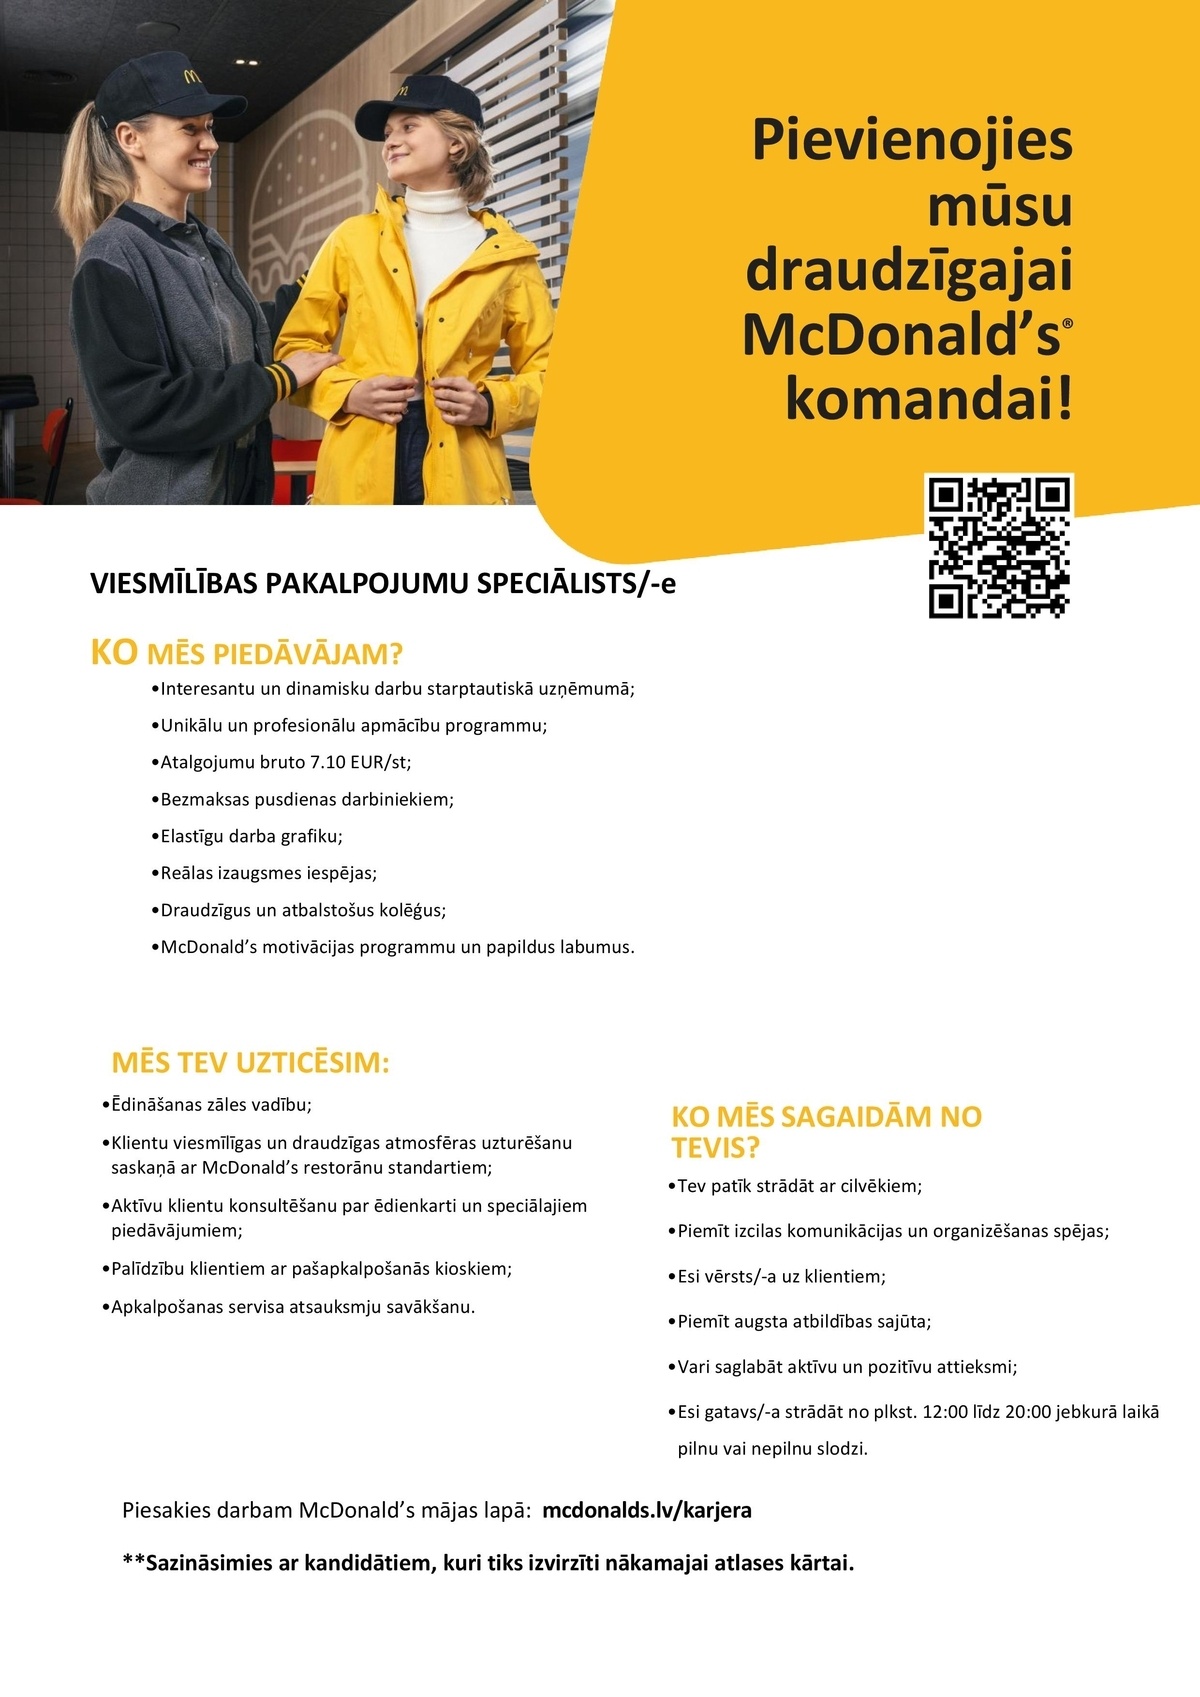 Premier Restaurants Latvia, SIA "McDonald's" viesmīlības pakalpojumu speciālists/-e